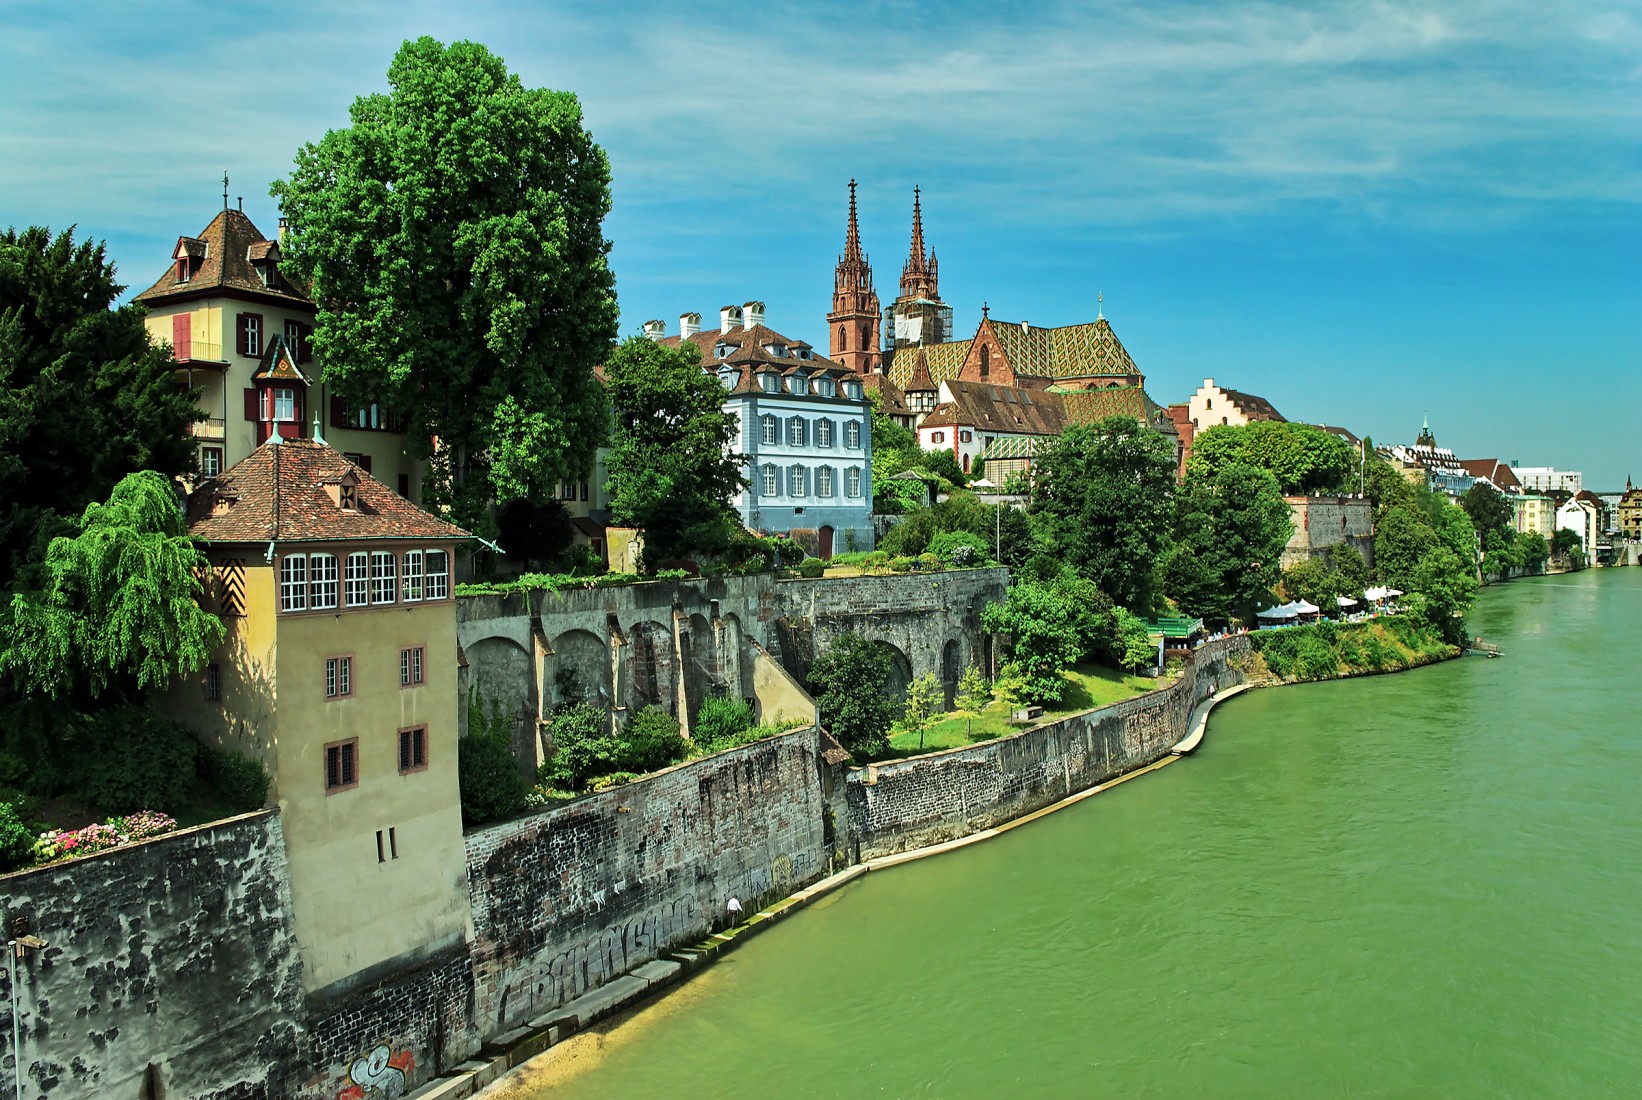  Basel, Rhinen, romertid, middelalder, kulturseverdigheter, gamlebyen, marktplatz, Sveits